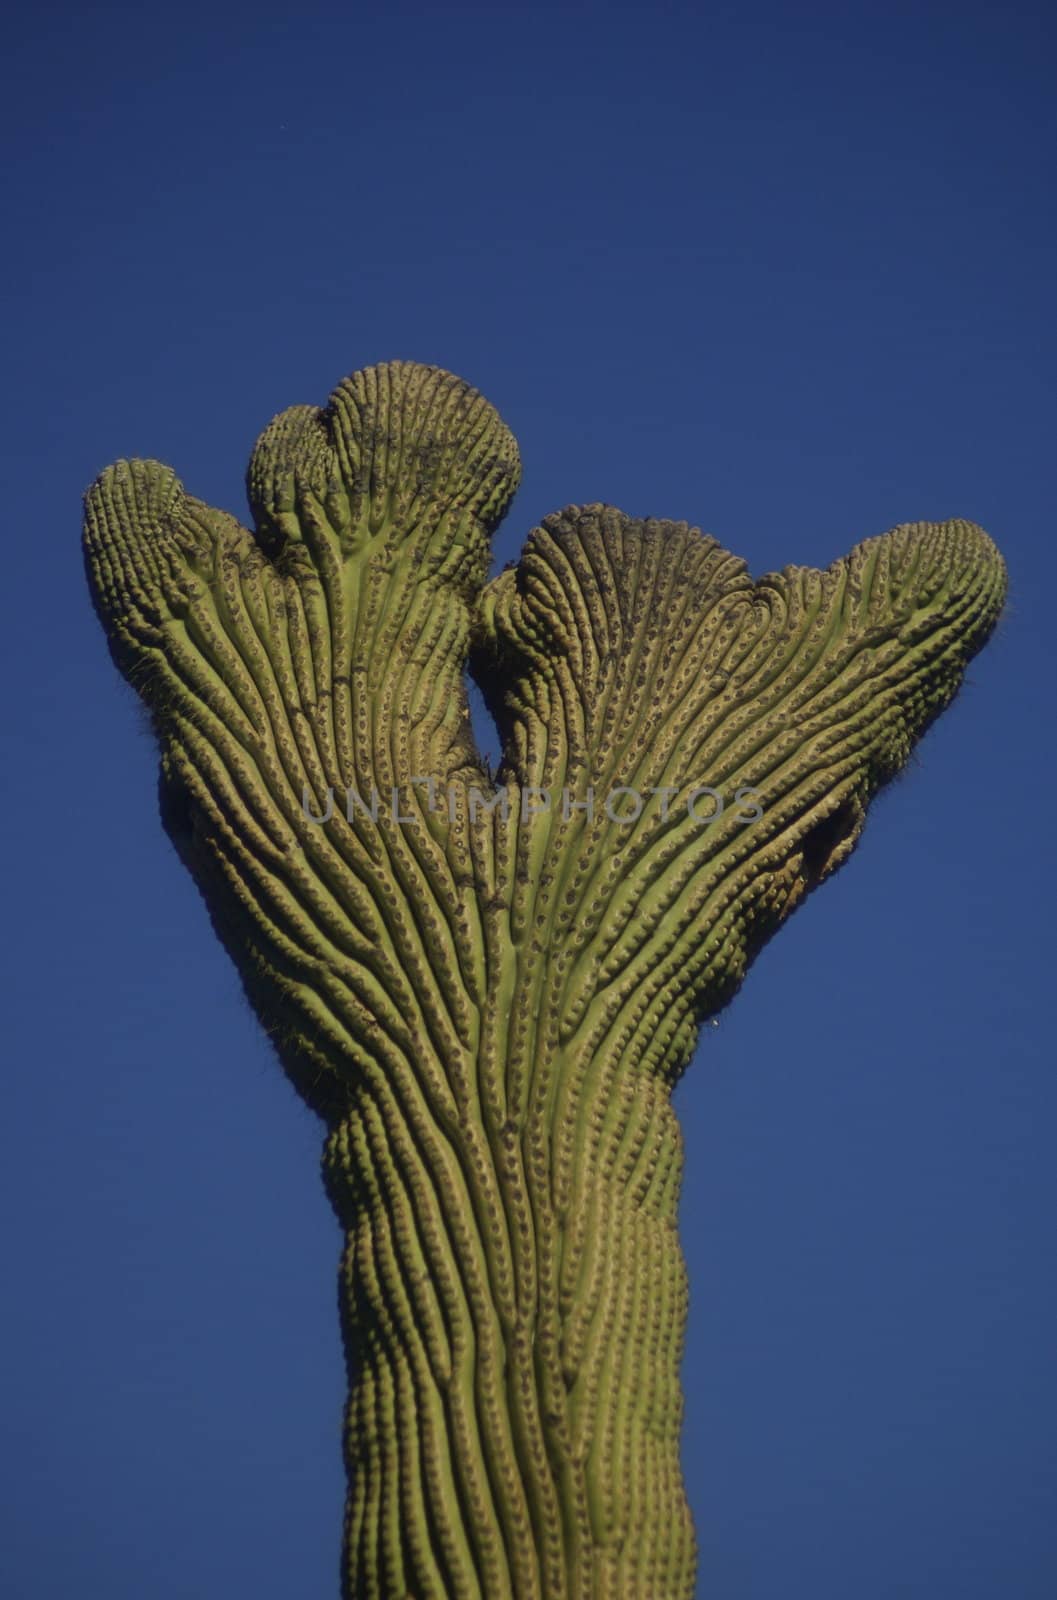 Cactus Stump by PrincessToula